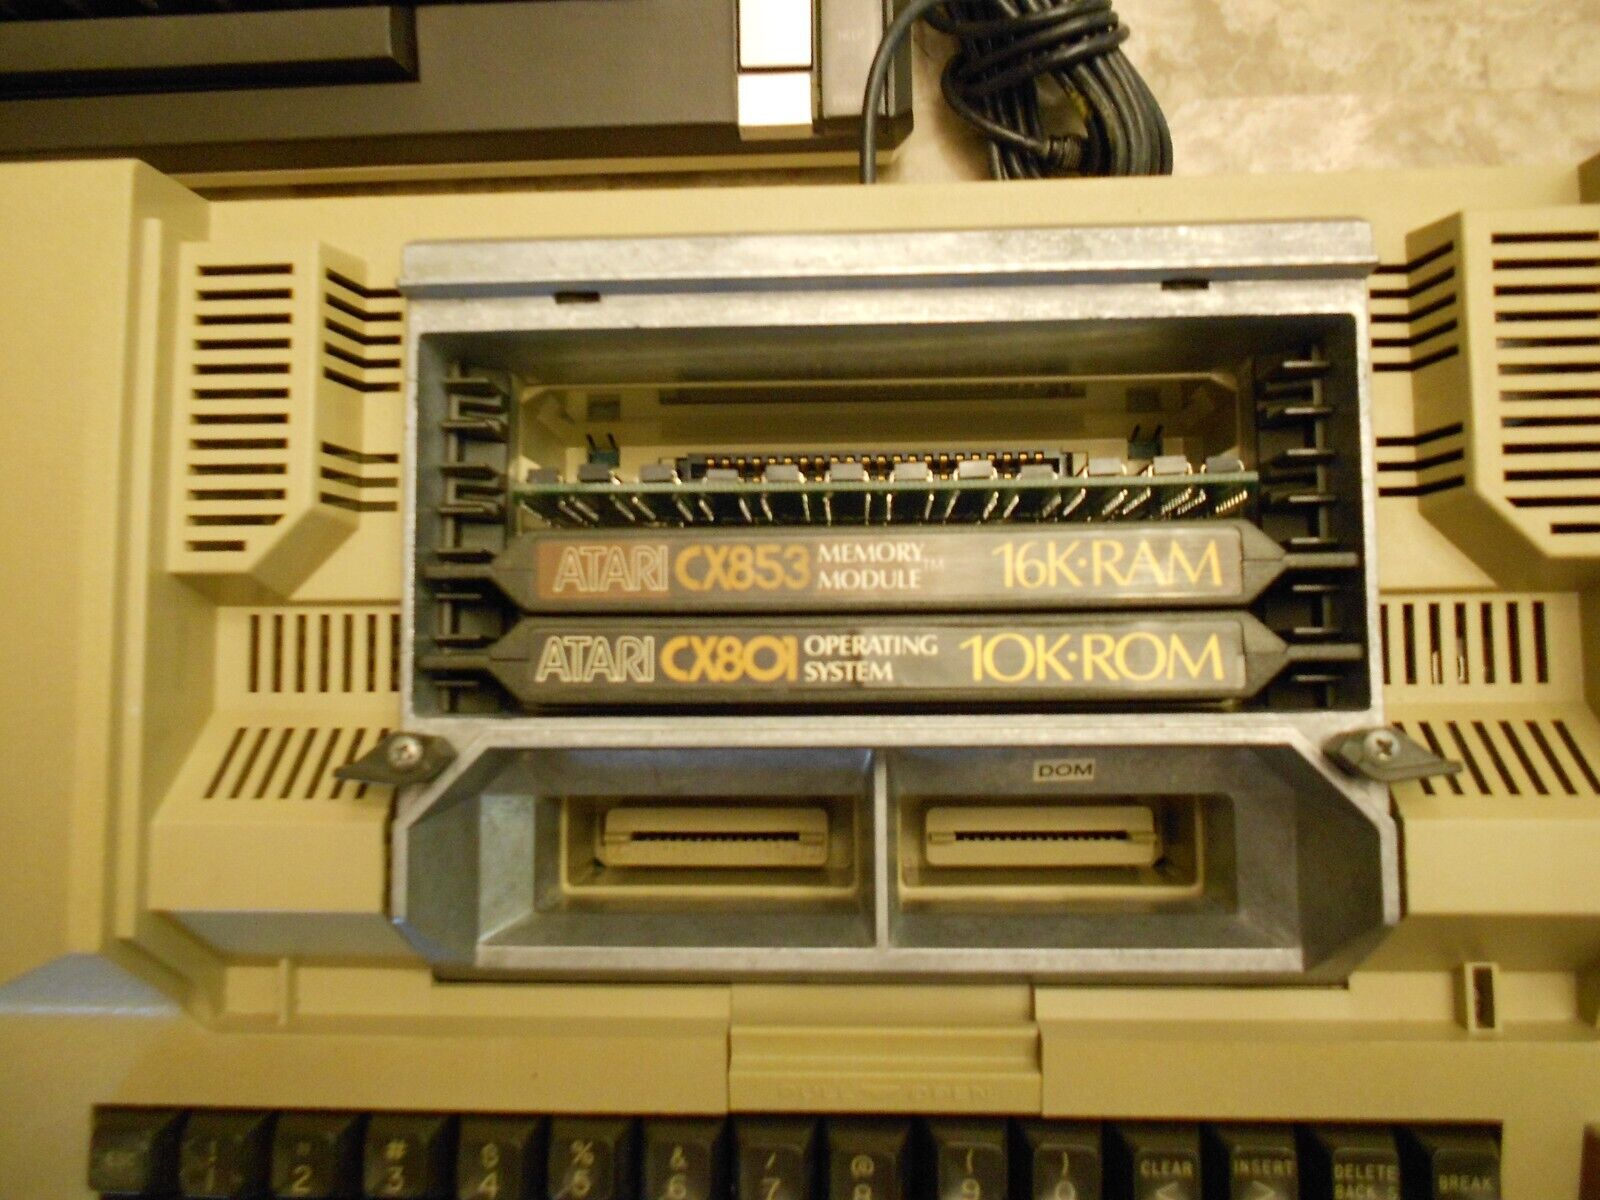 Atari combo computers